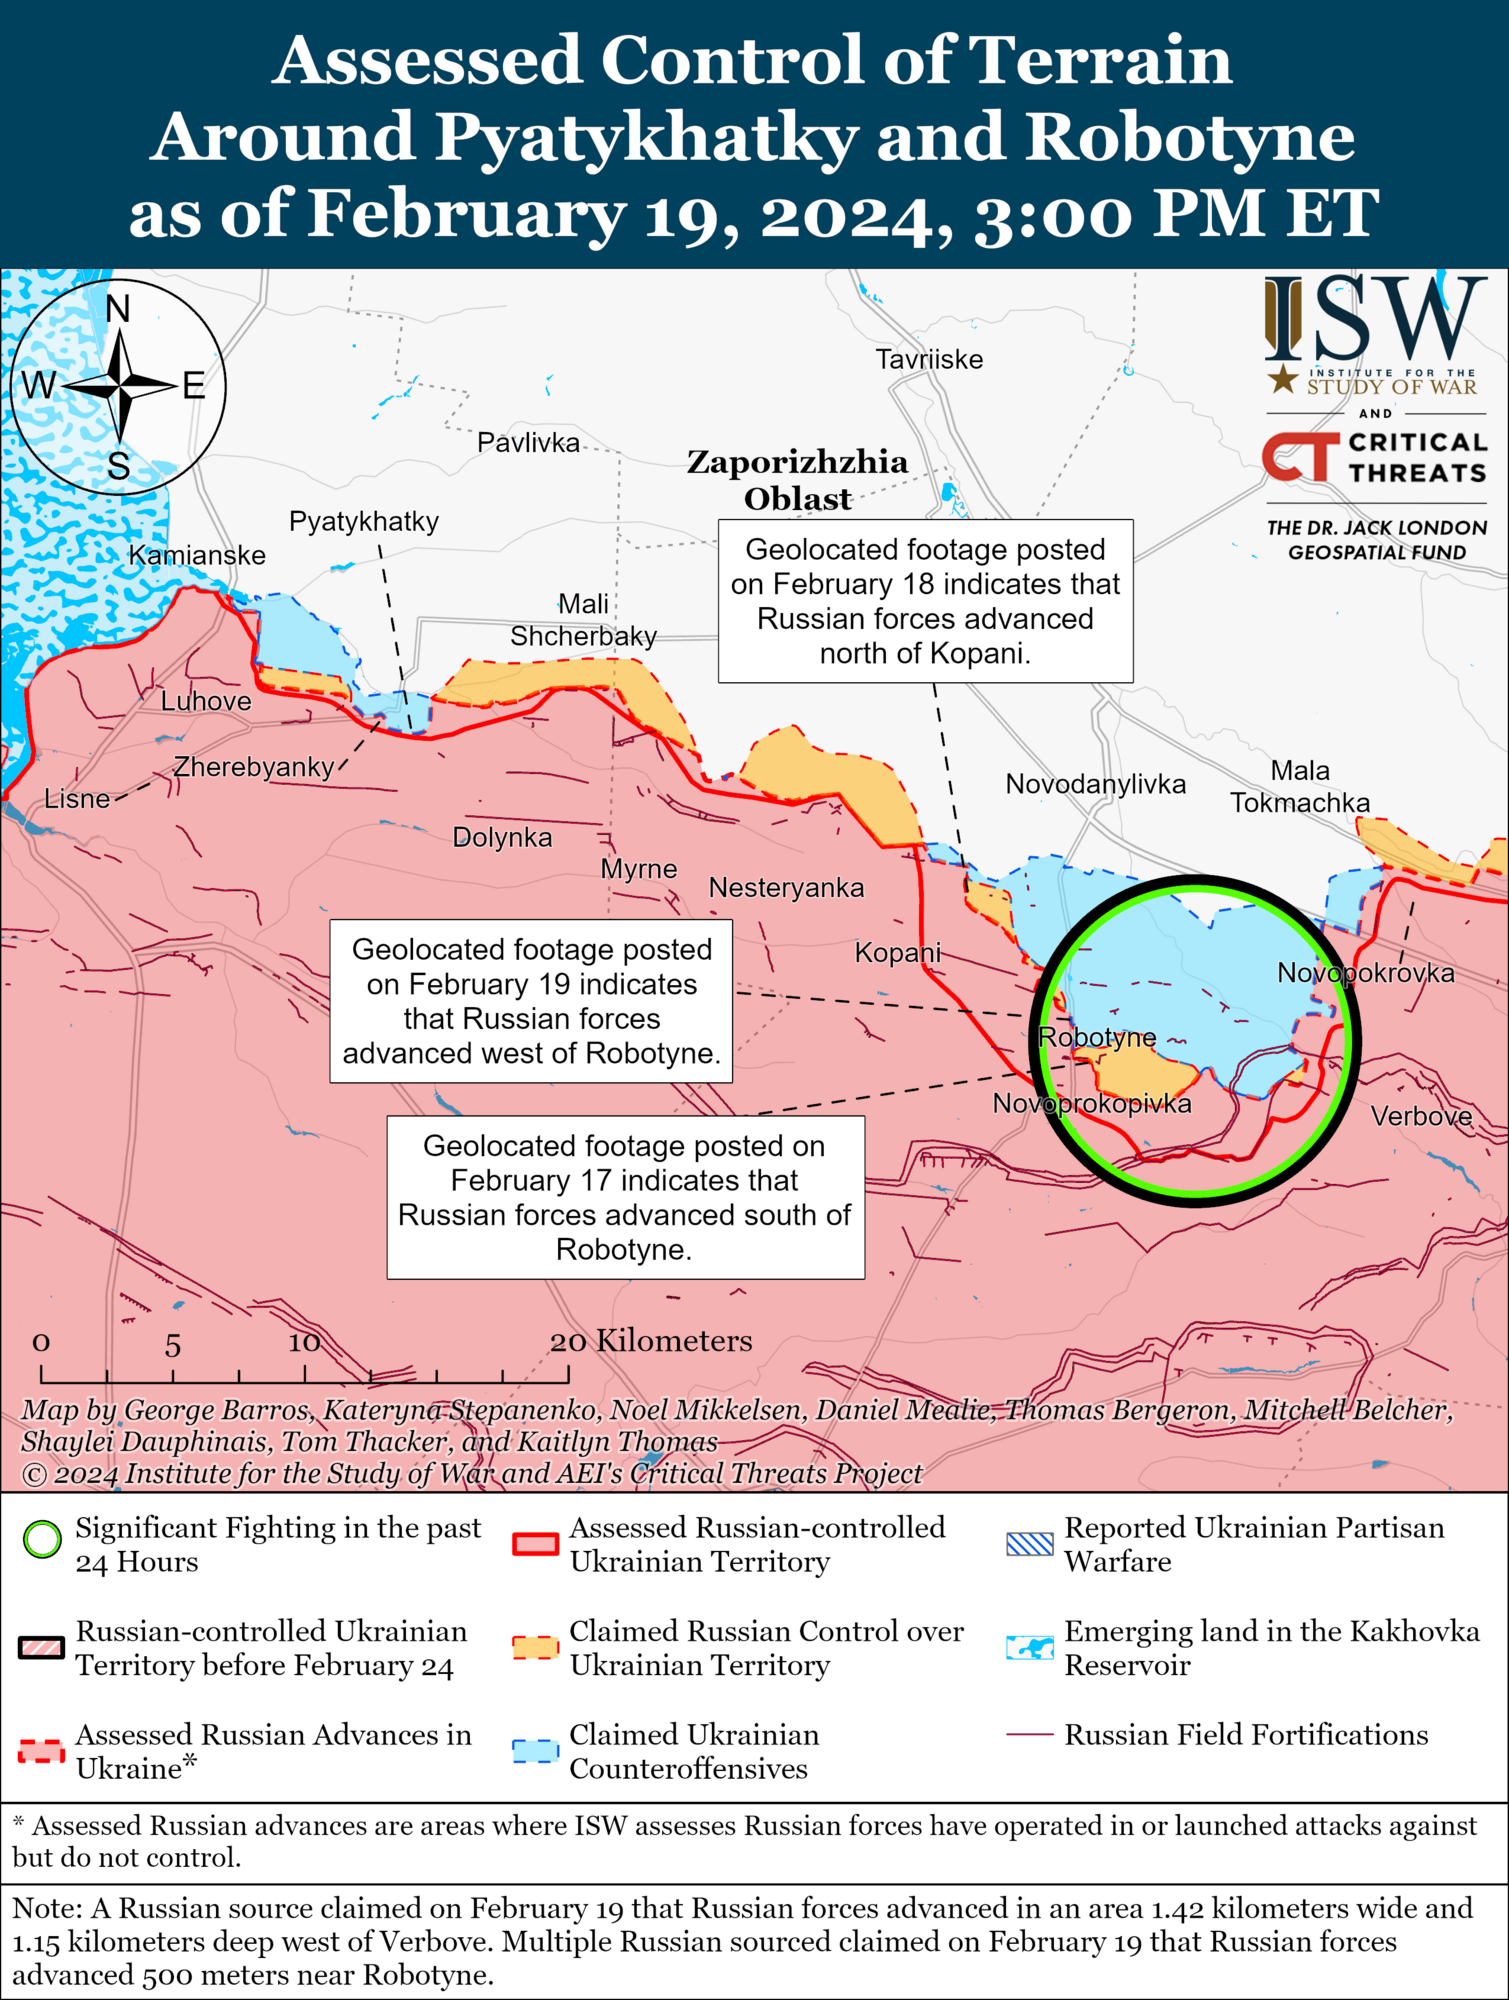 Війська РФ незначно просунулися біля Бахмута й Мар'їнки, тривають бої: в ISW оцінили ситуацію на фронті. Карта